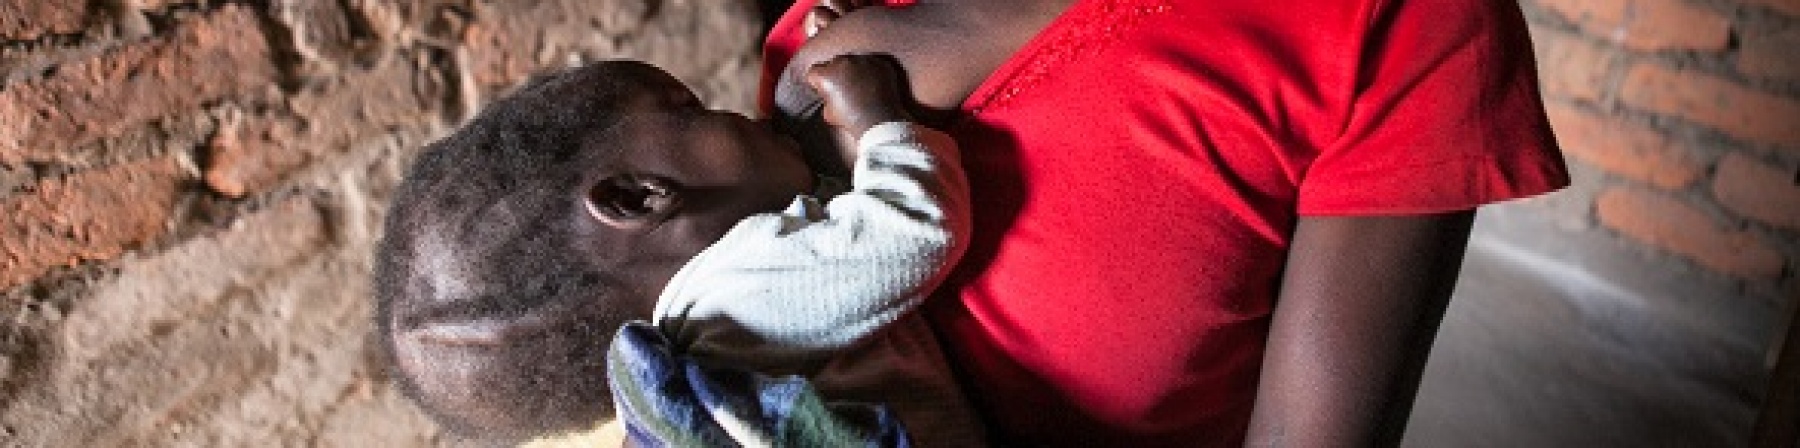 La malnutrizione in contesti difficili: la storia della bambina di Lidia